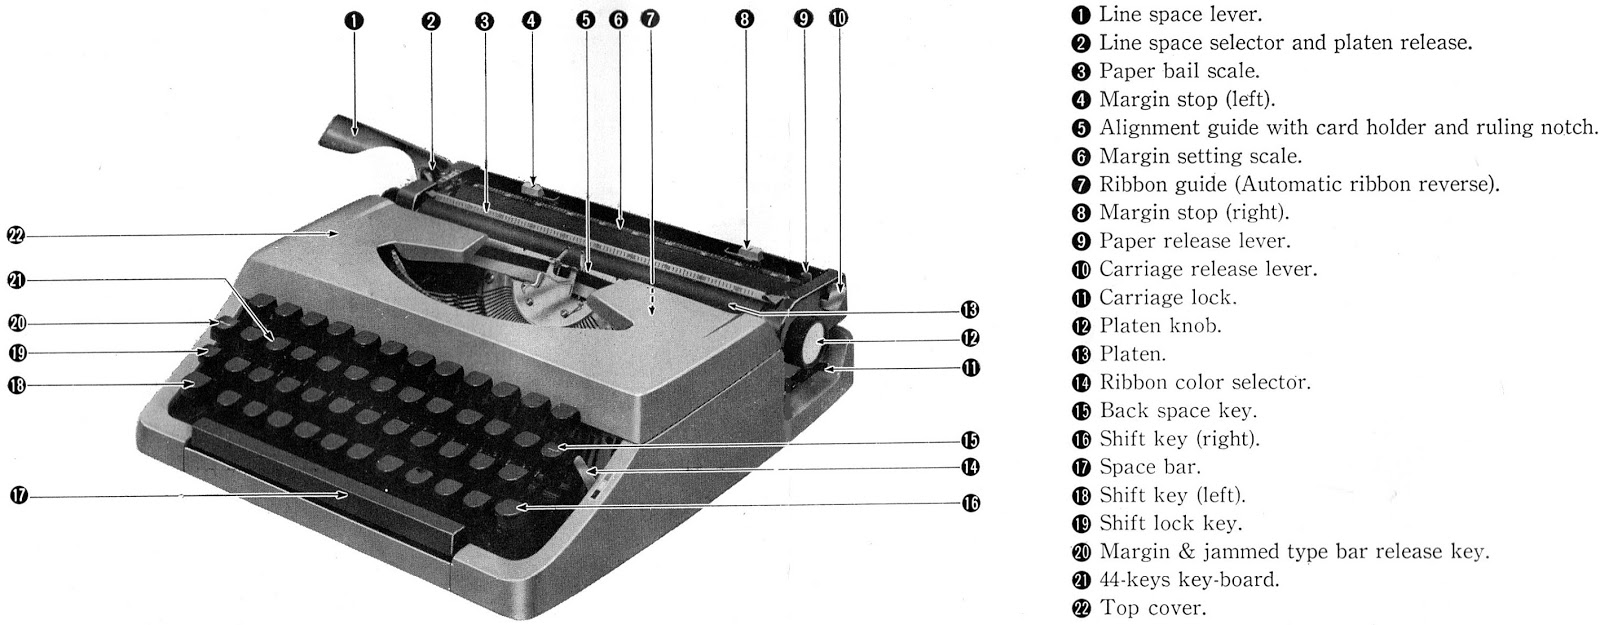 oz.Typewriter: Brother Portable Typewriter Manual (JP-1 2nd Variant